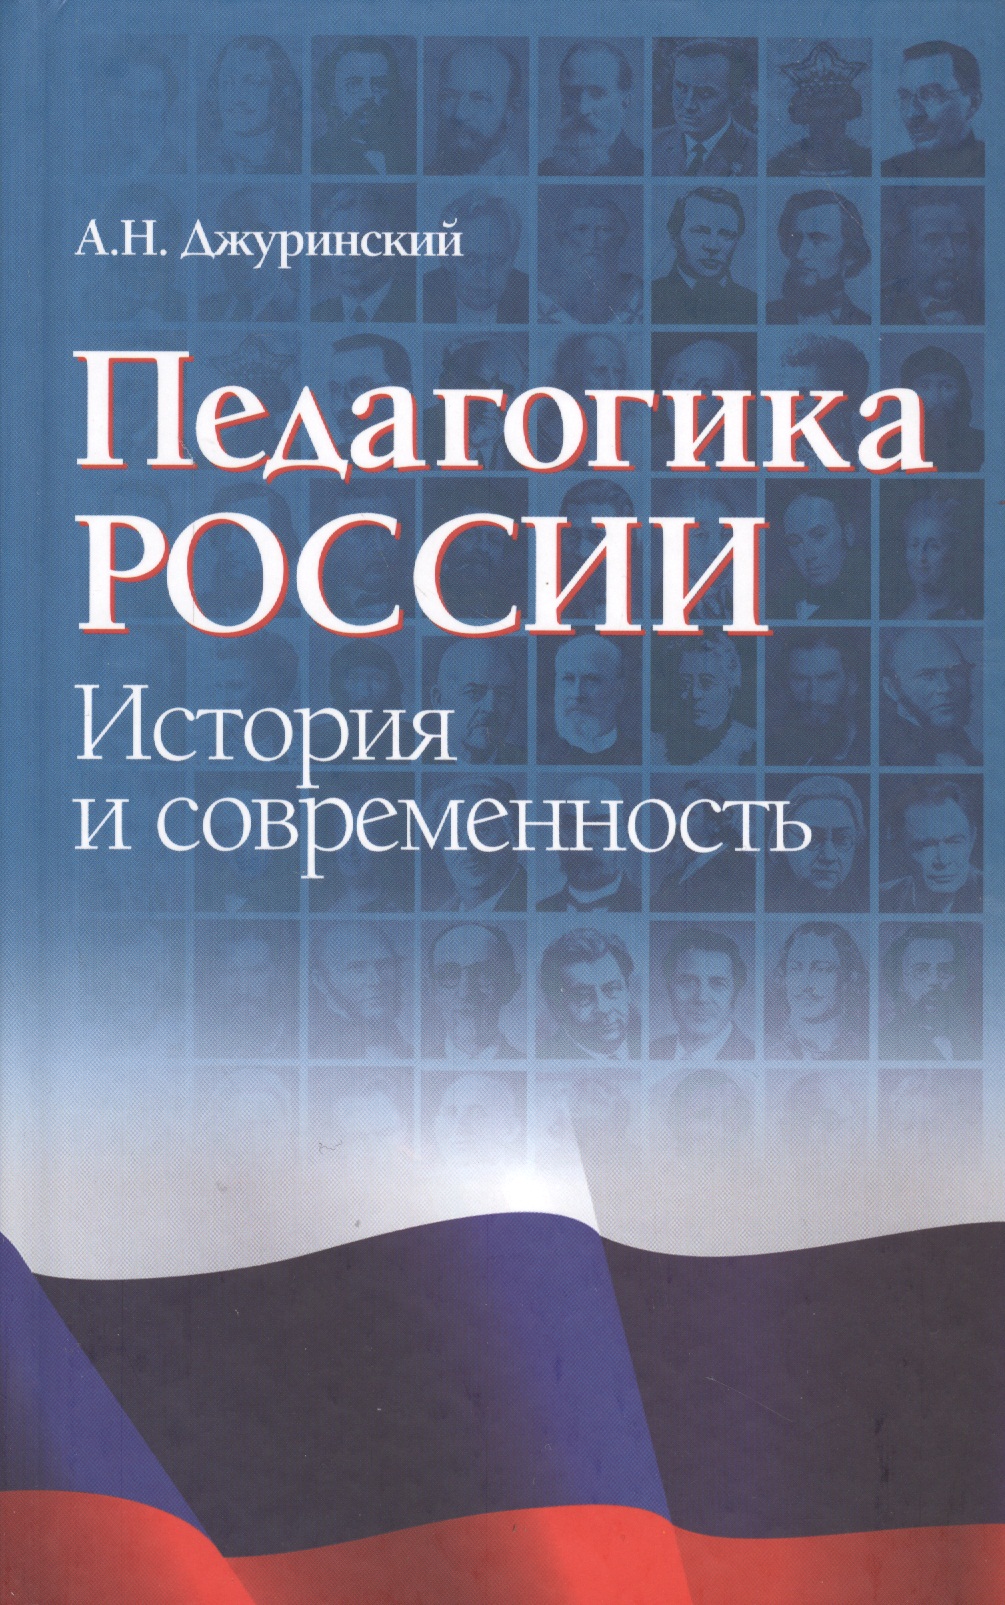 Педагогика России: история и современность парусные яхты история и современность